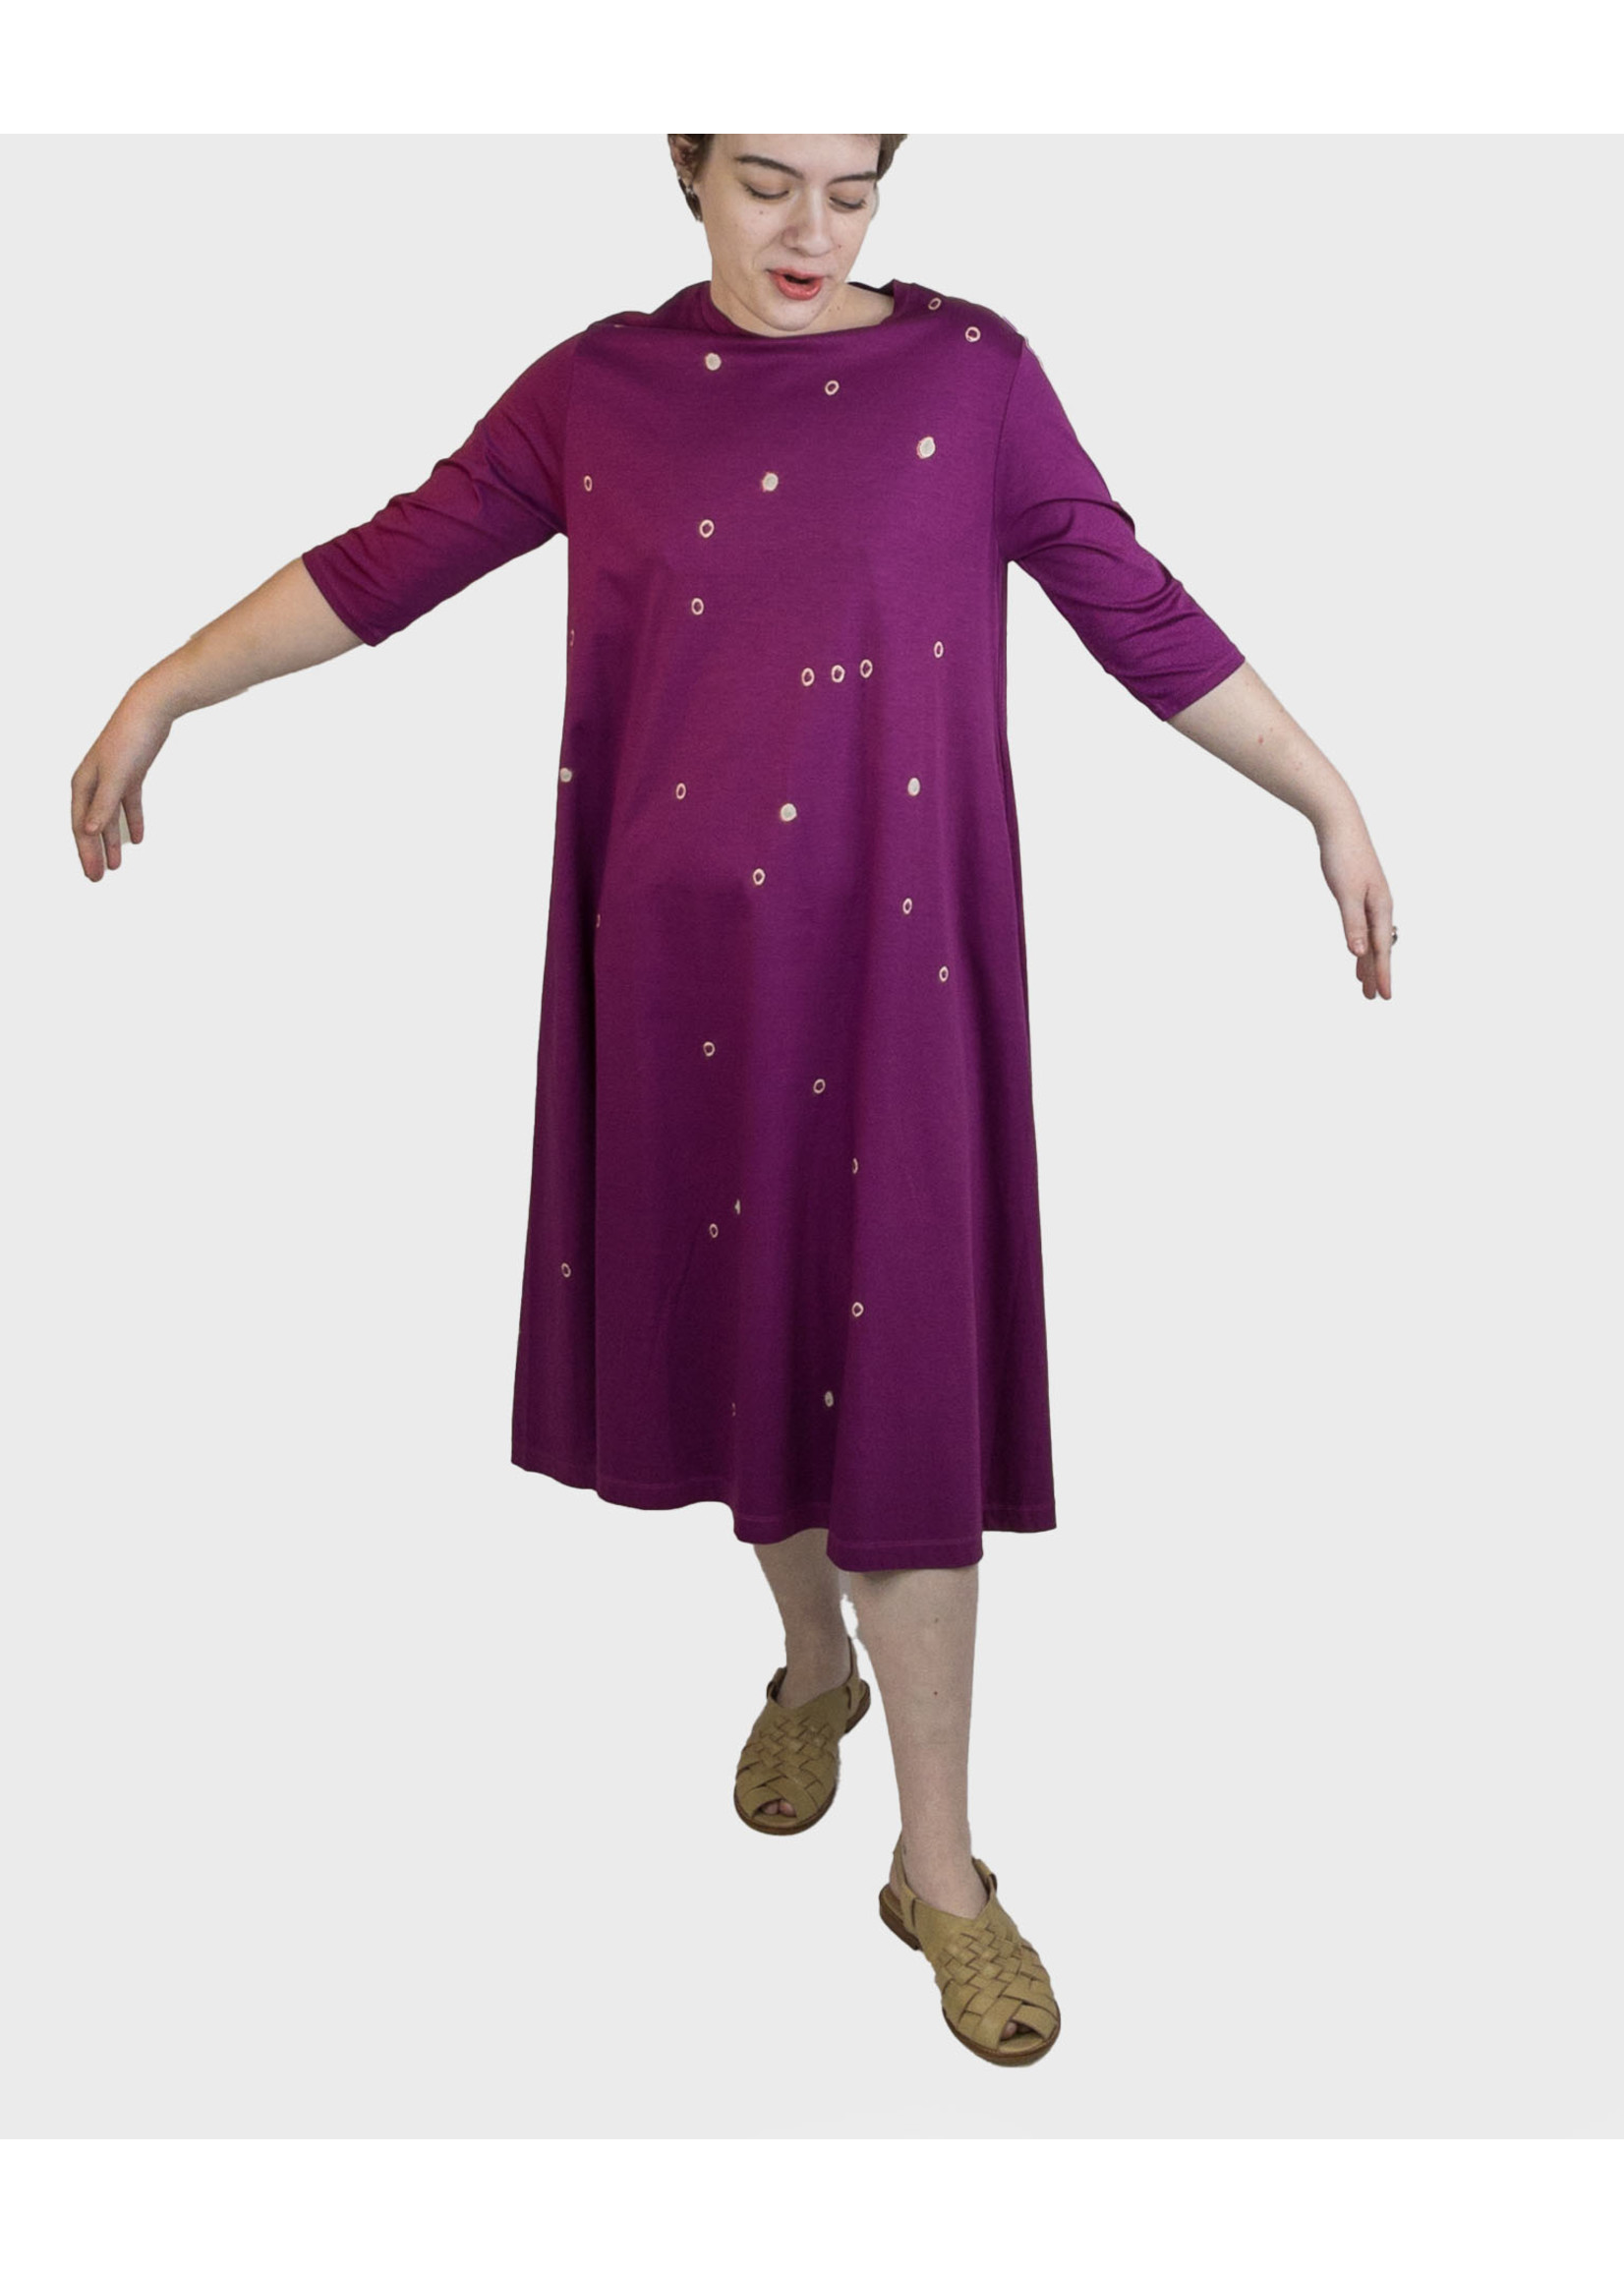 SUZUSAN Star Dress - 3/4 Sleeves